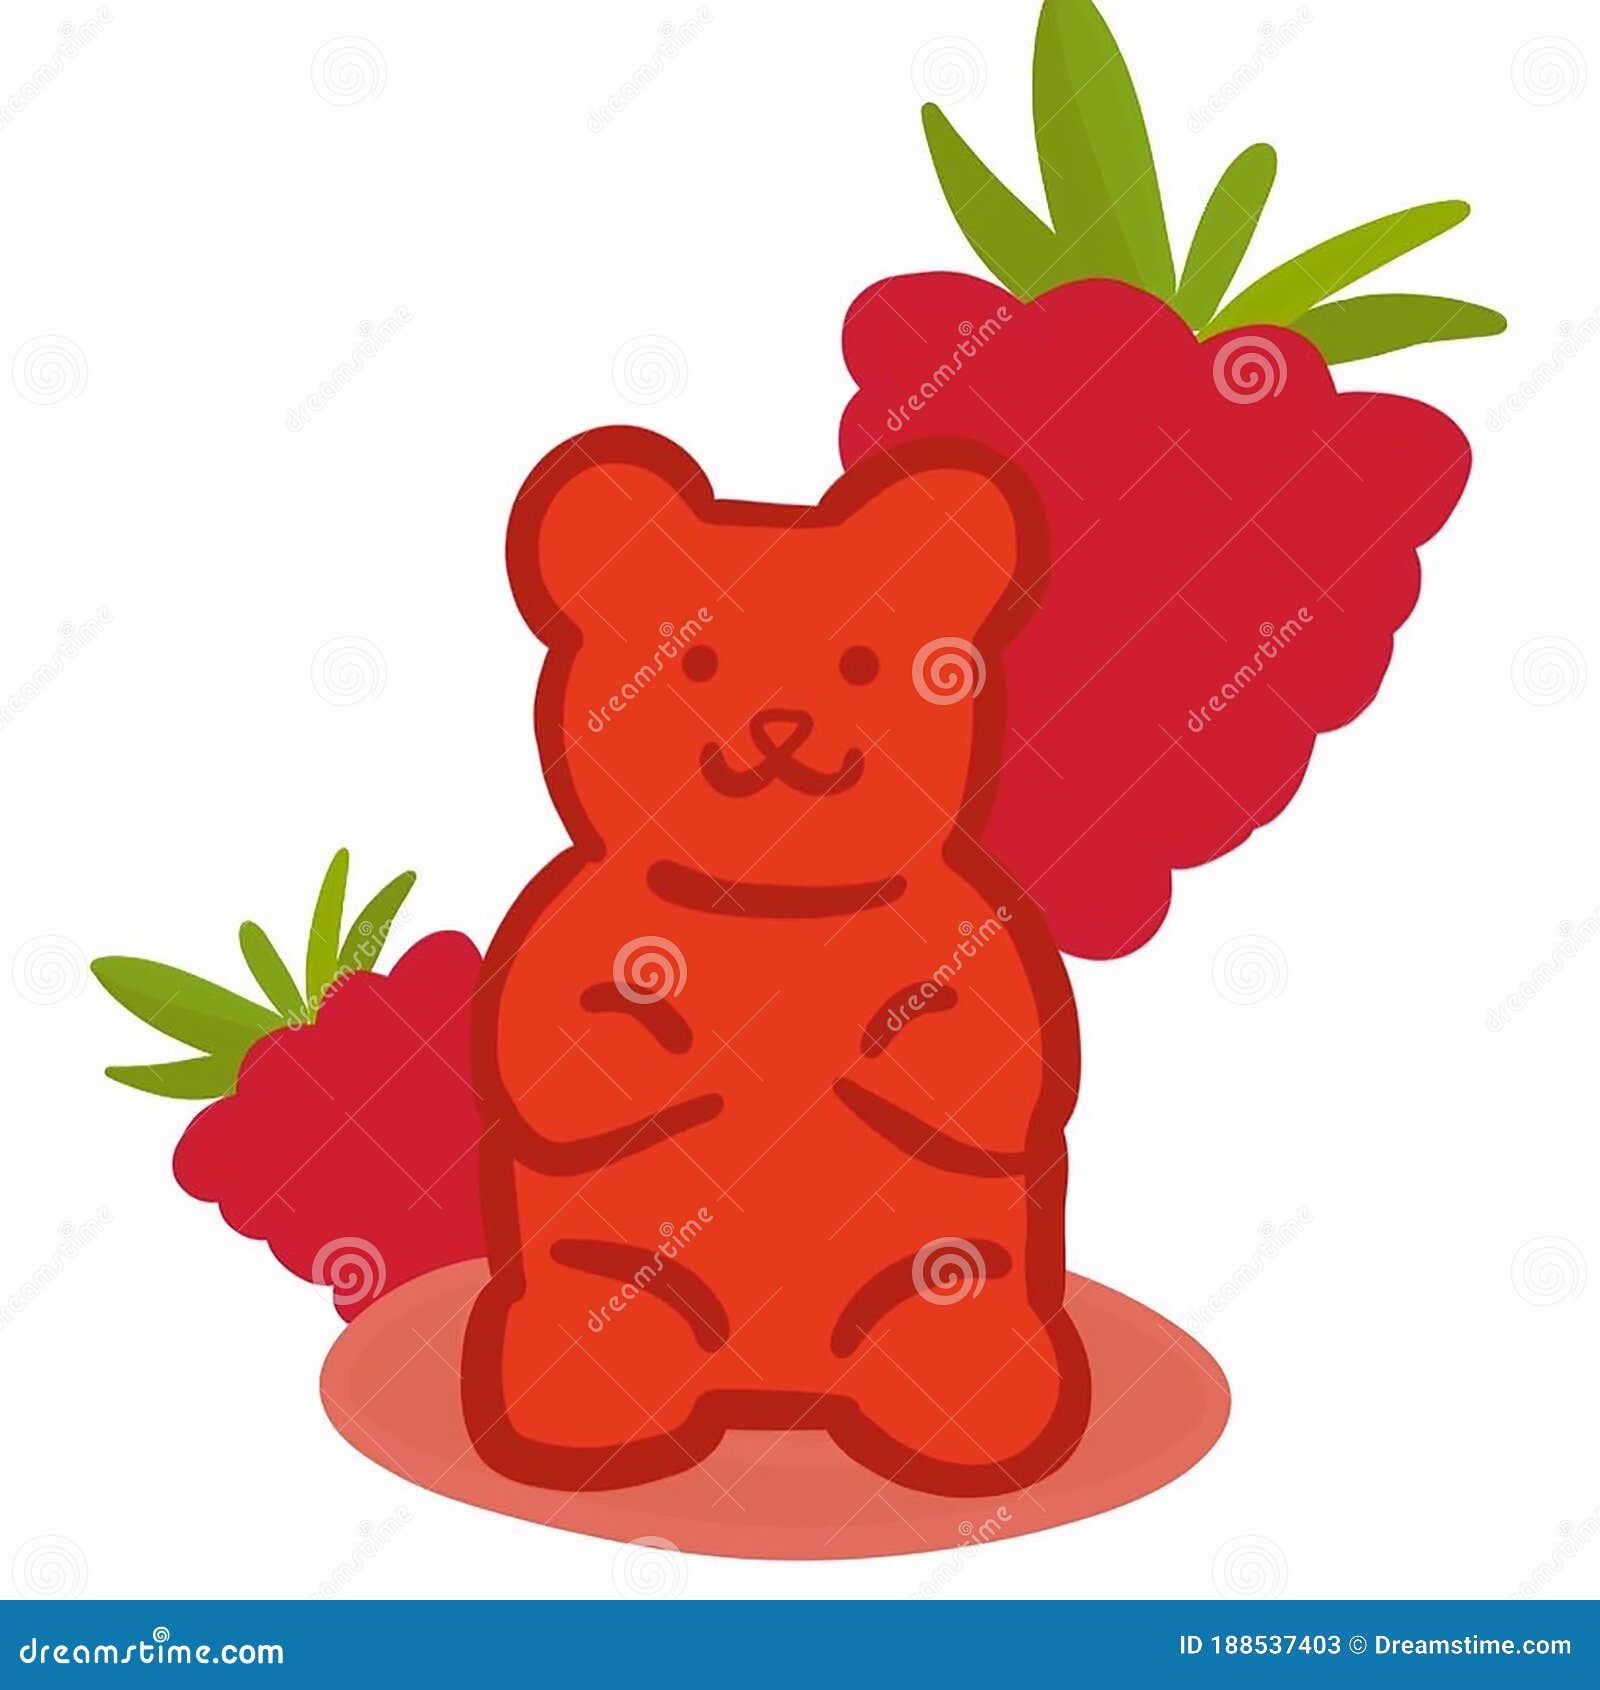 2d cartoon illustration of gummy bear Stock Illustration